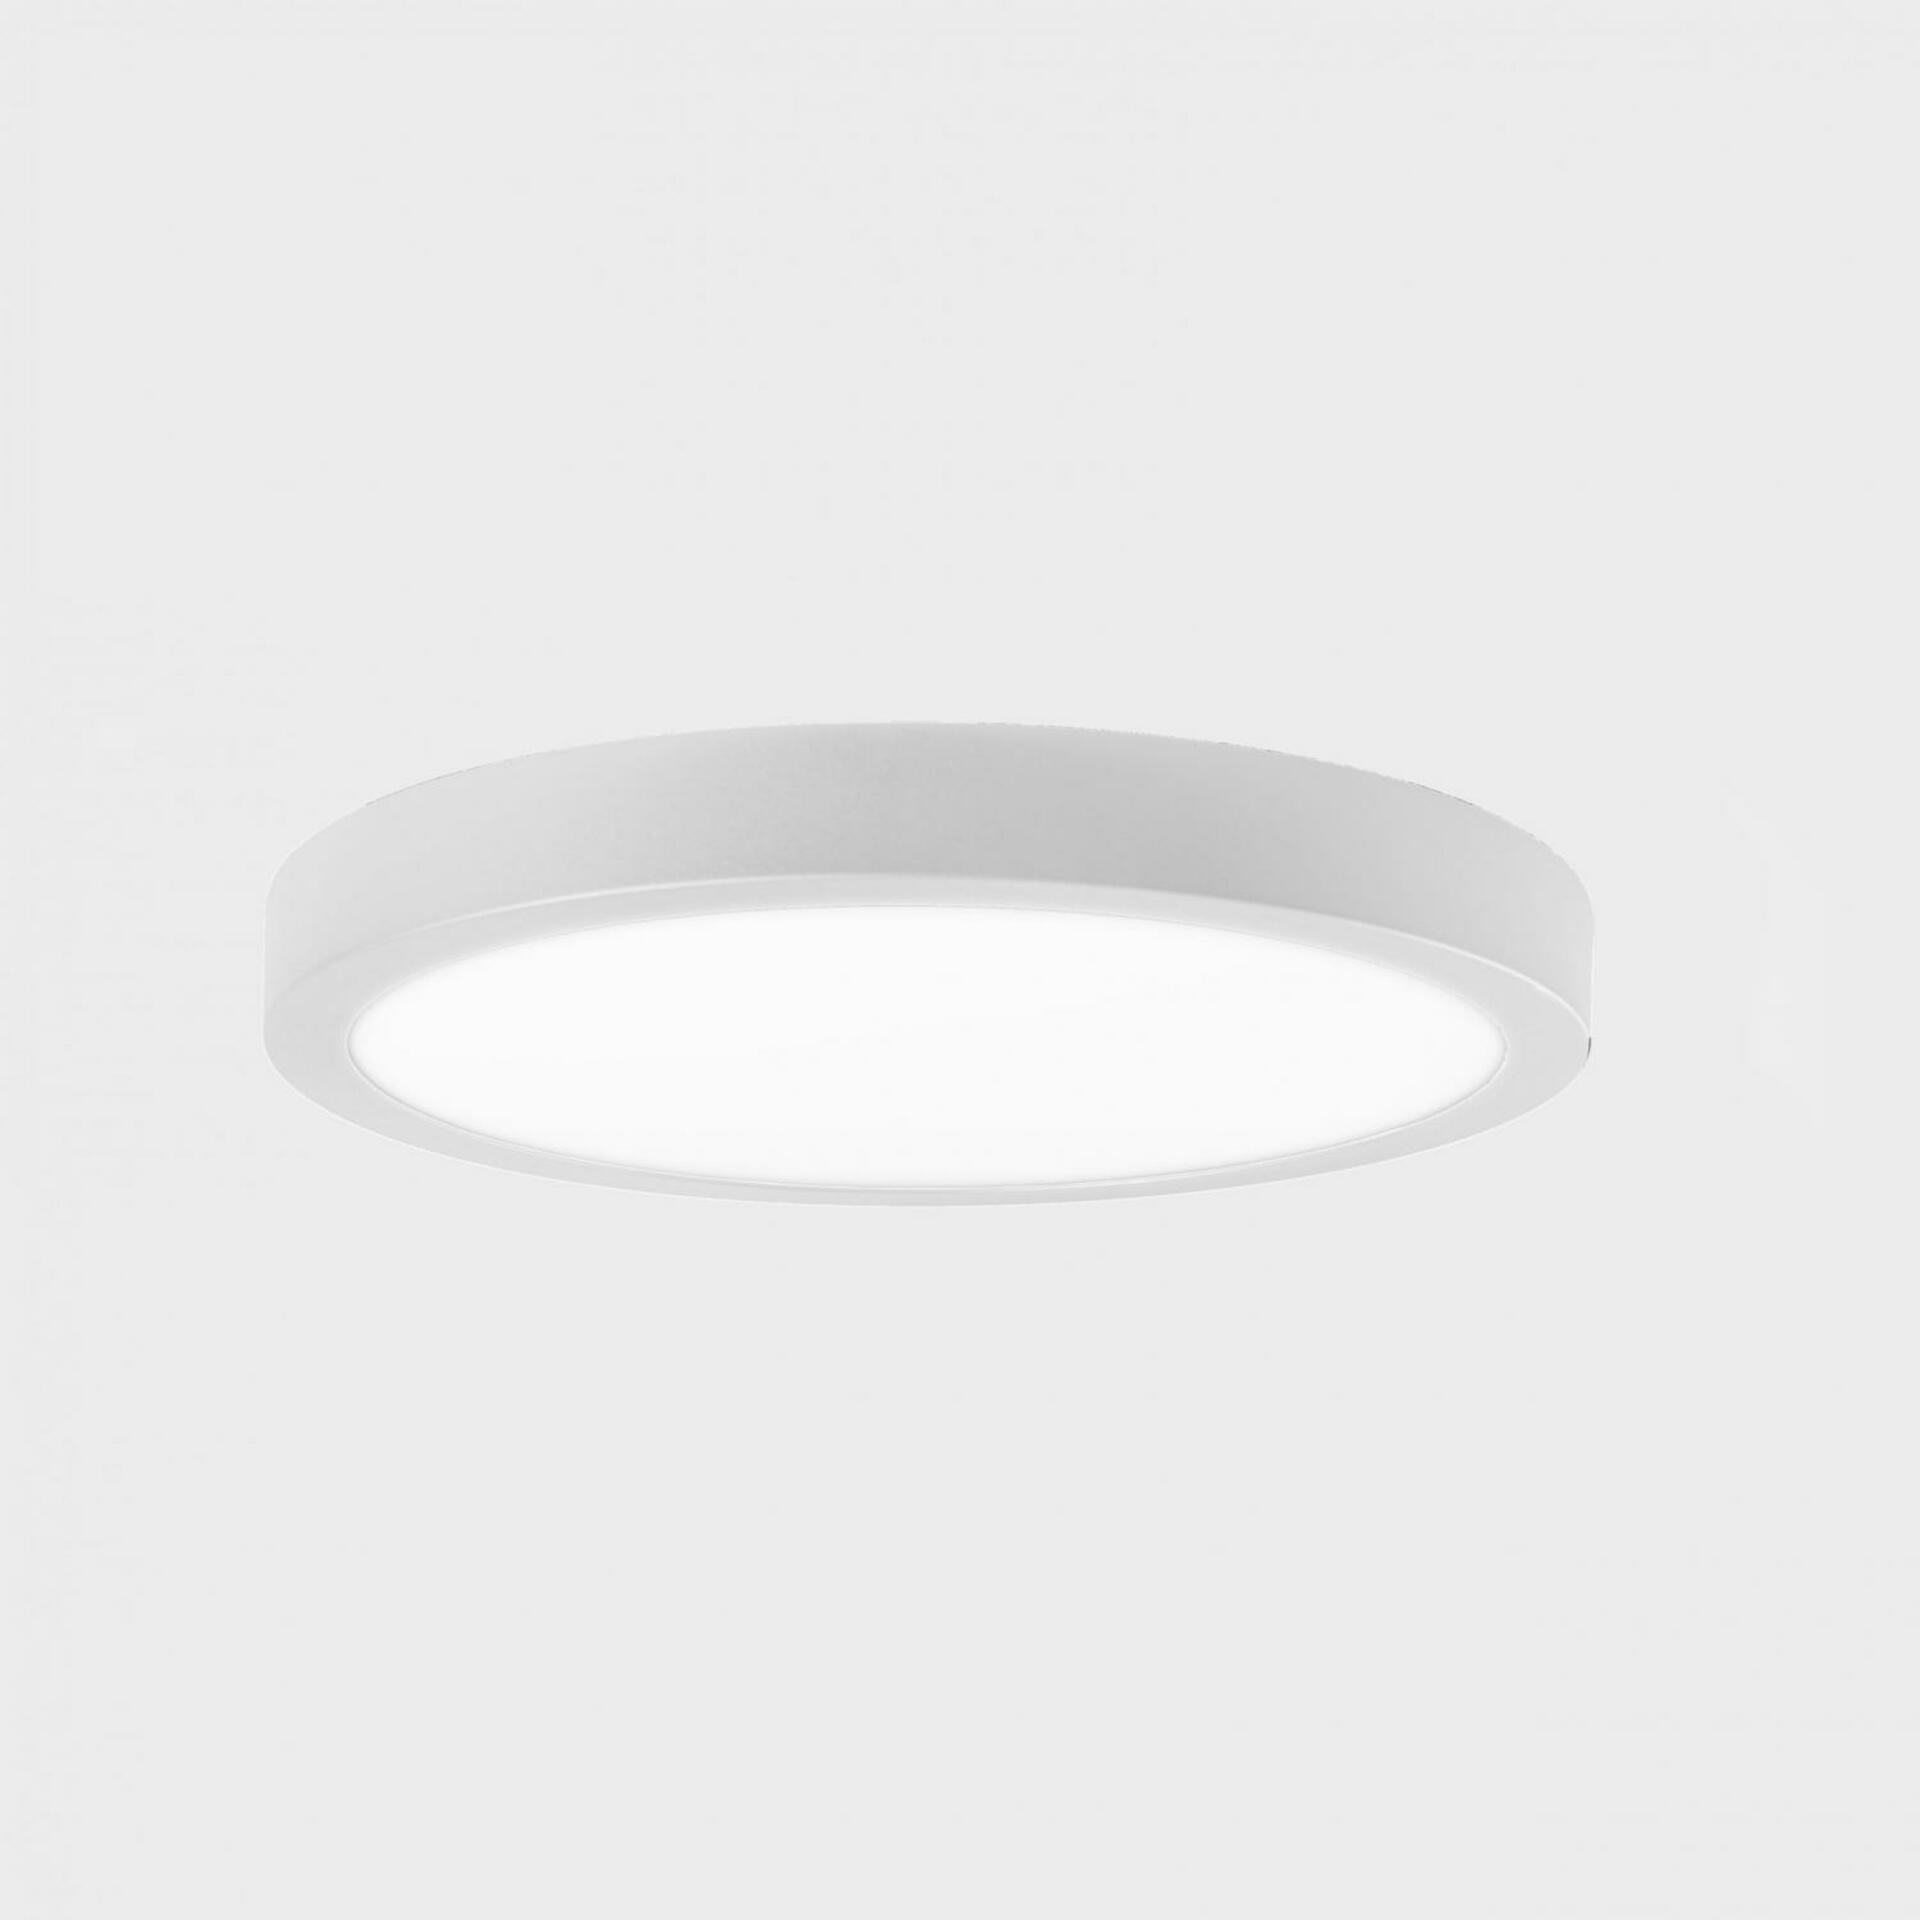 KOHL LIGHTING KOHL-Lighting DISC SLIM stropní svítidlo pr. 500 mm bílá 48 W CRI 80 4000K Non-Dimm